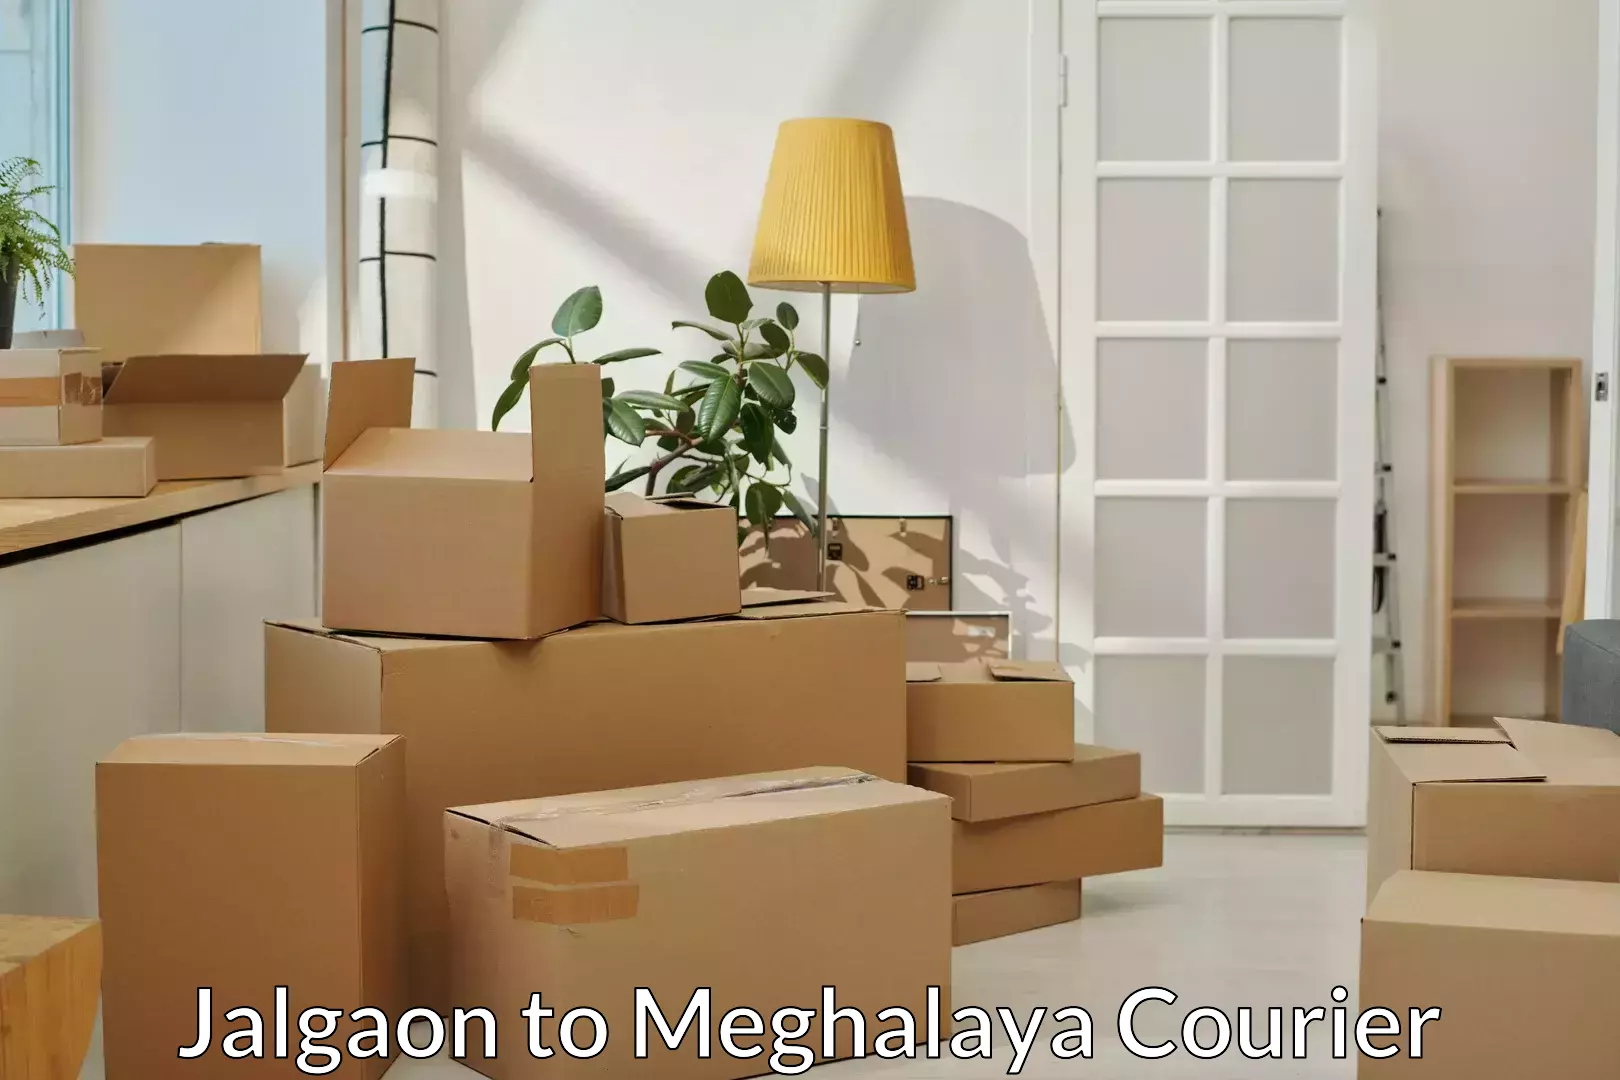 Reliable furniture transport in Jalgaon to Meghalaya